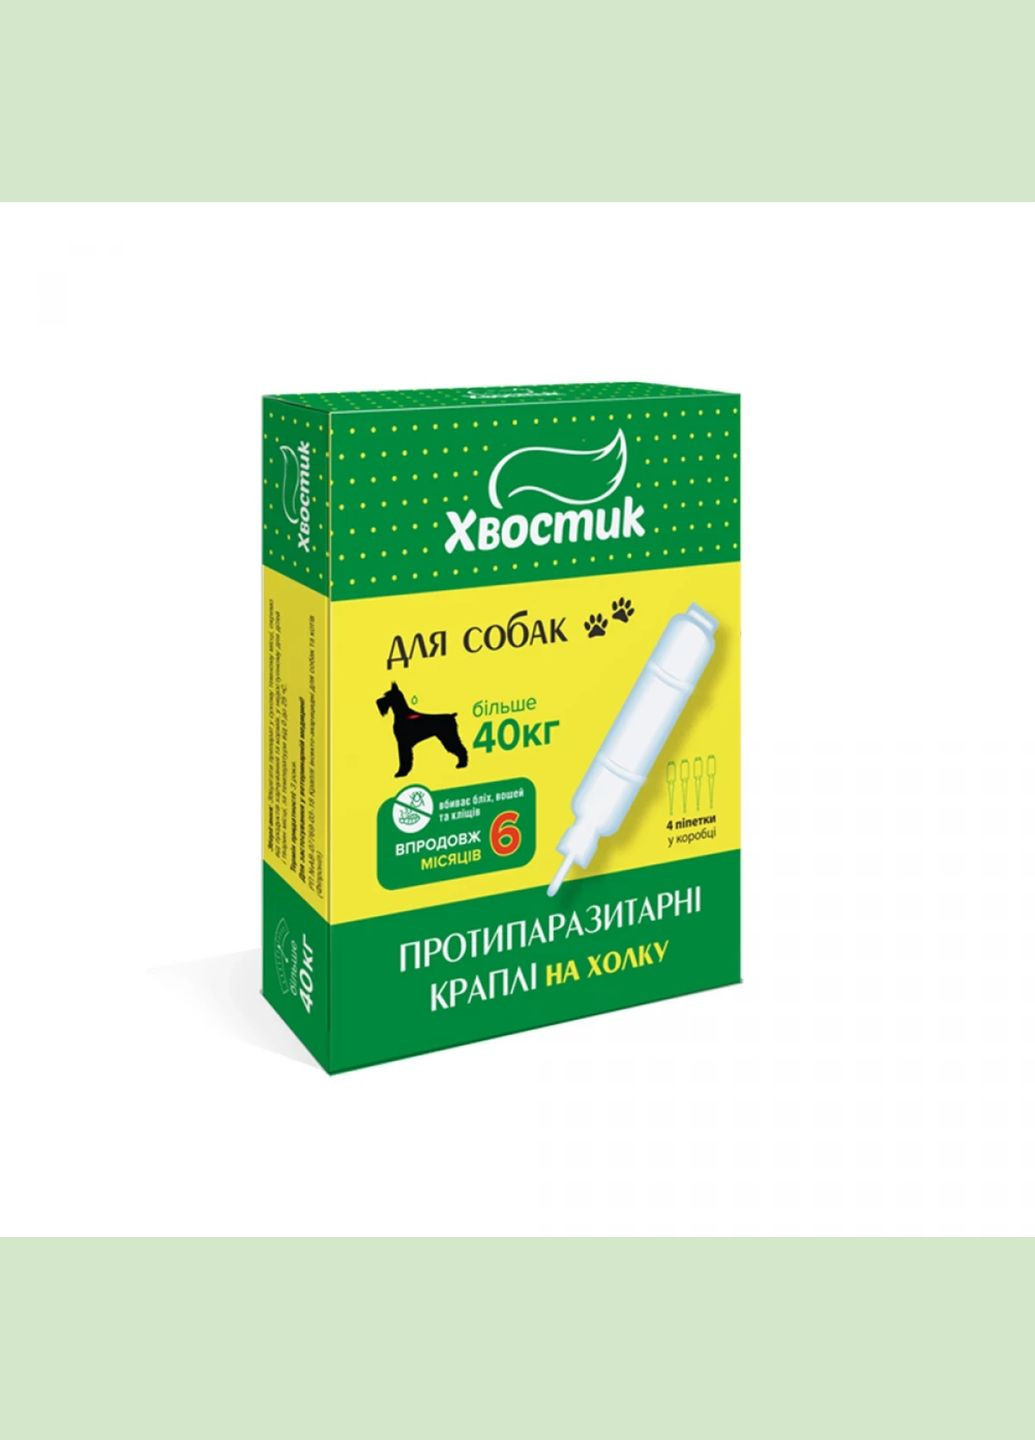 Капли противопаразитарные на холку фипронил для собак от 40 кг, 4 п*6 мл, 160403 Хвостик (278309874)